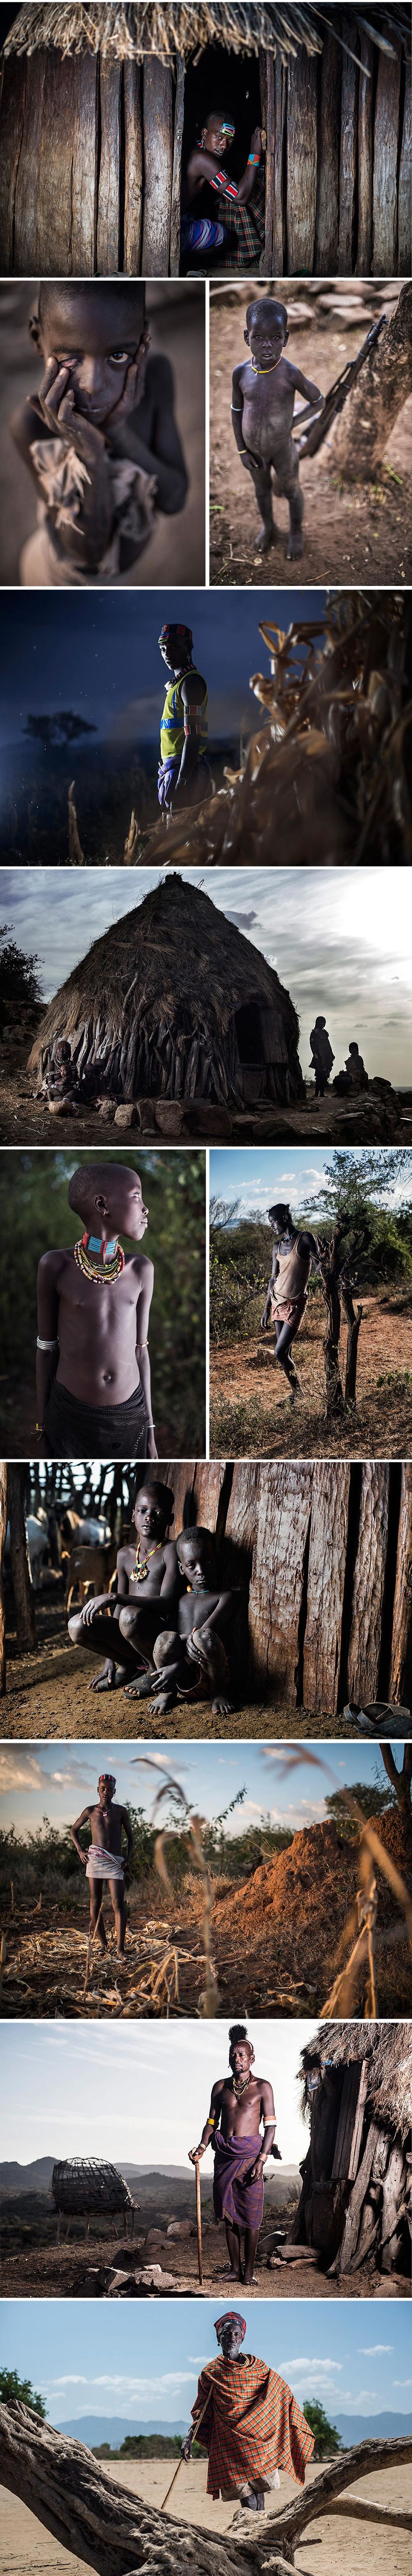 Ảnh đẹp về bộ lạc Omo Valley, Ethiopia